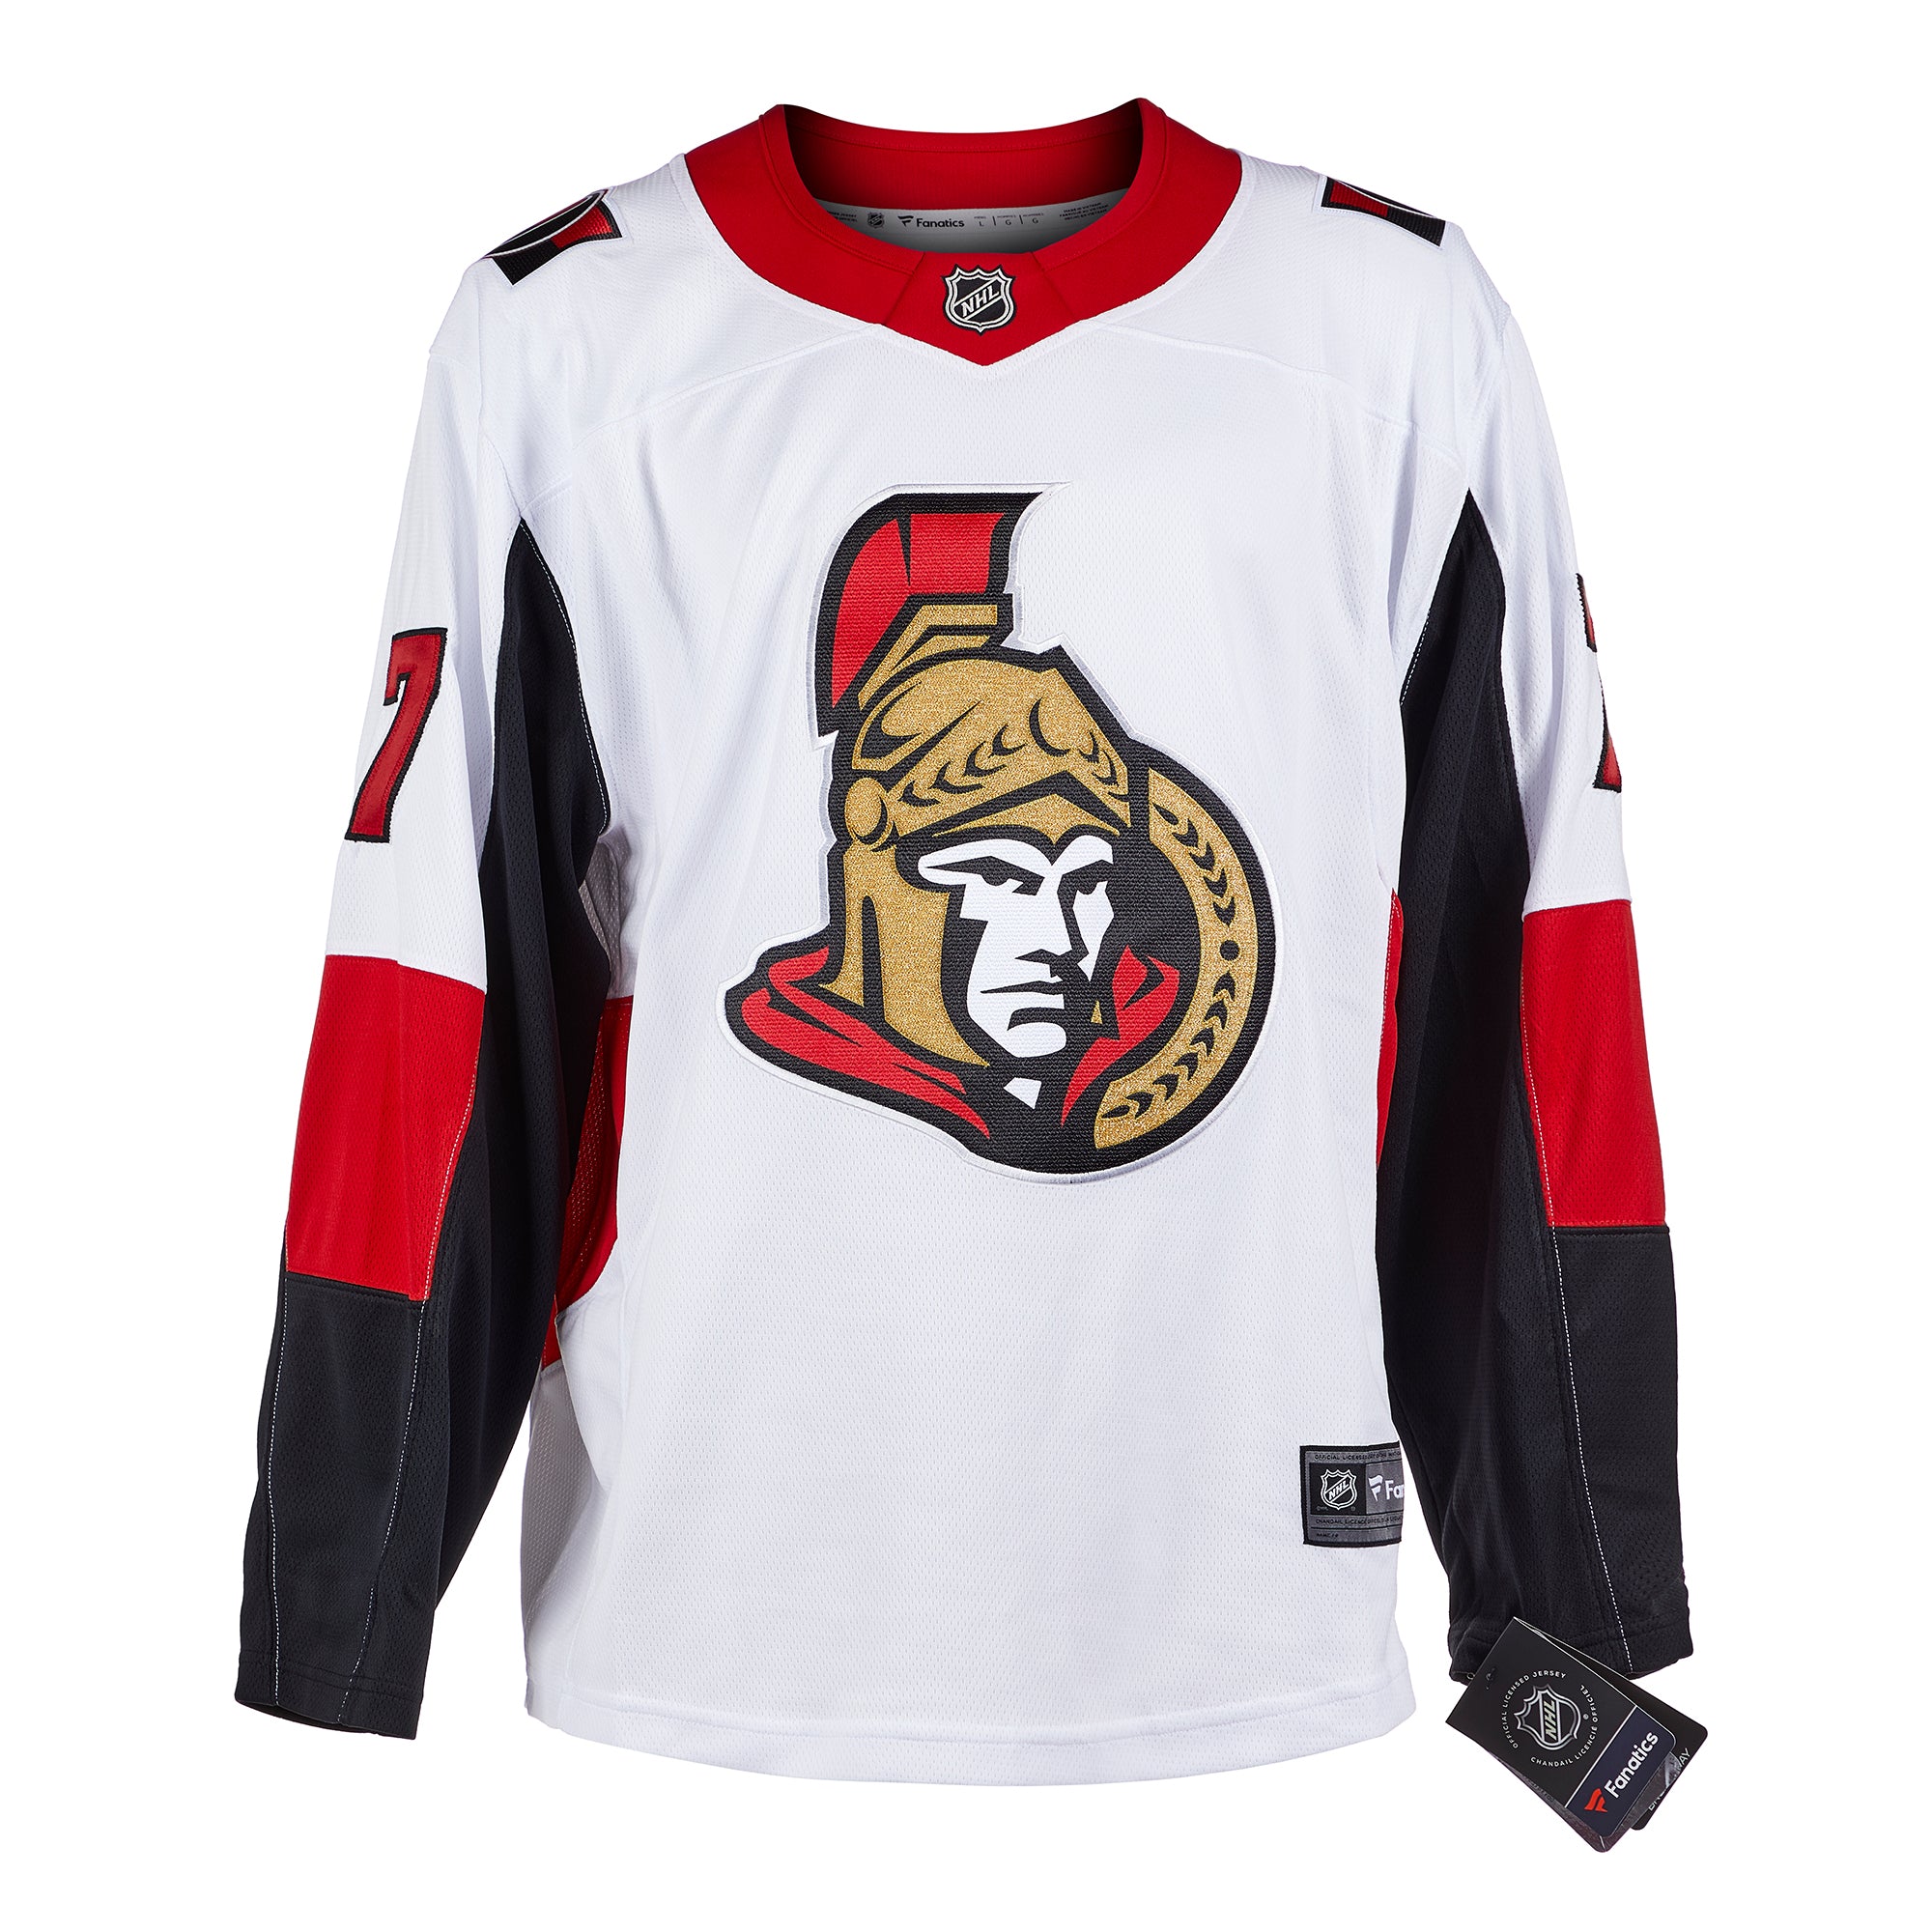 Brady Tkachuk Ottawa Senators Signed White Adidas Jersey